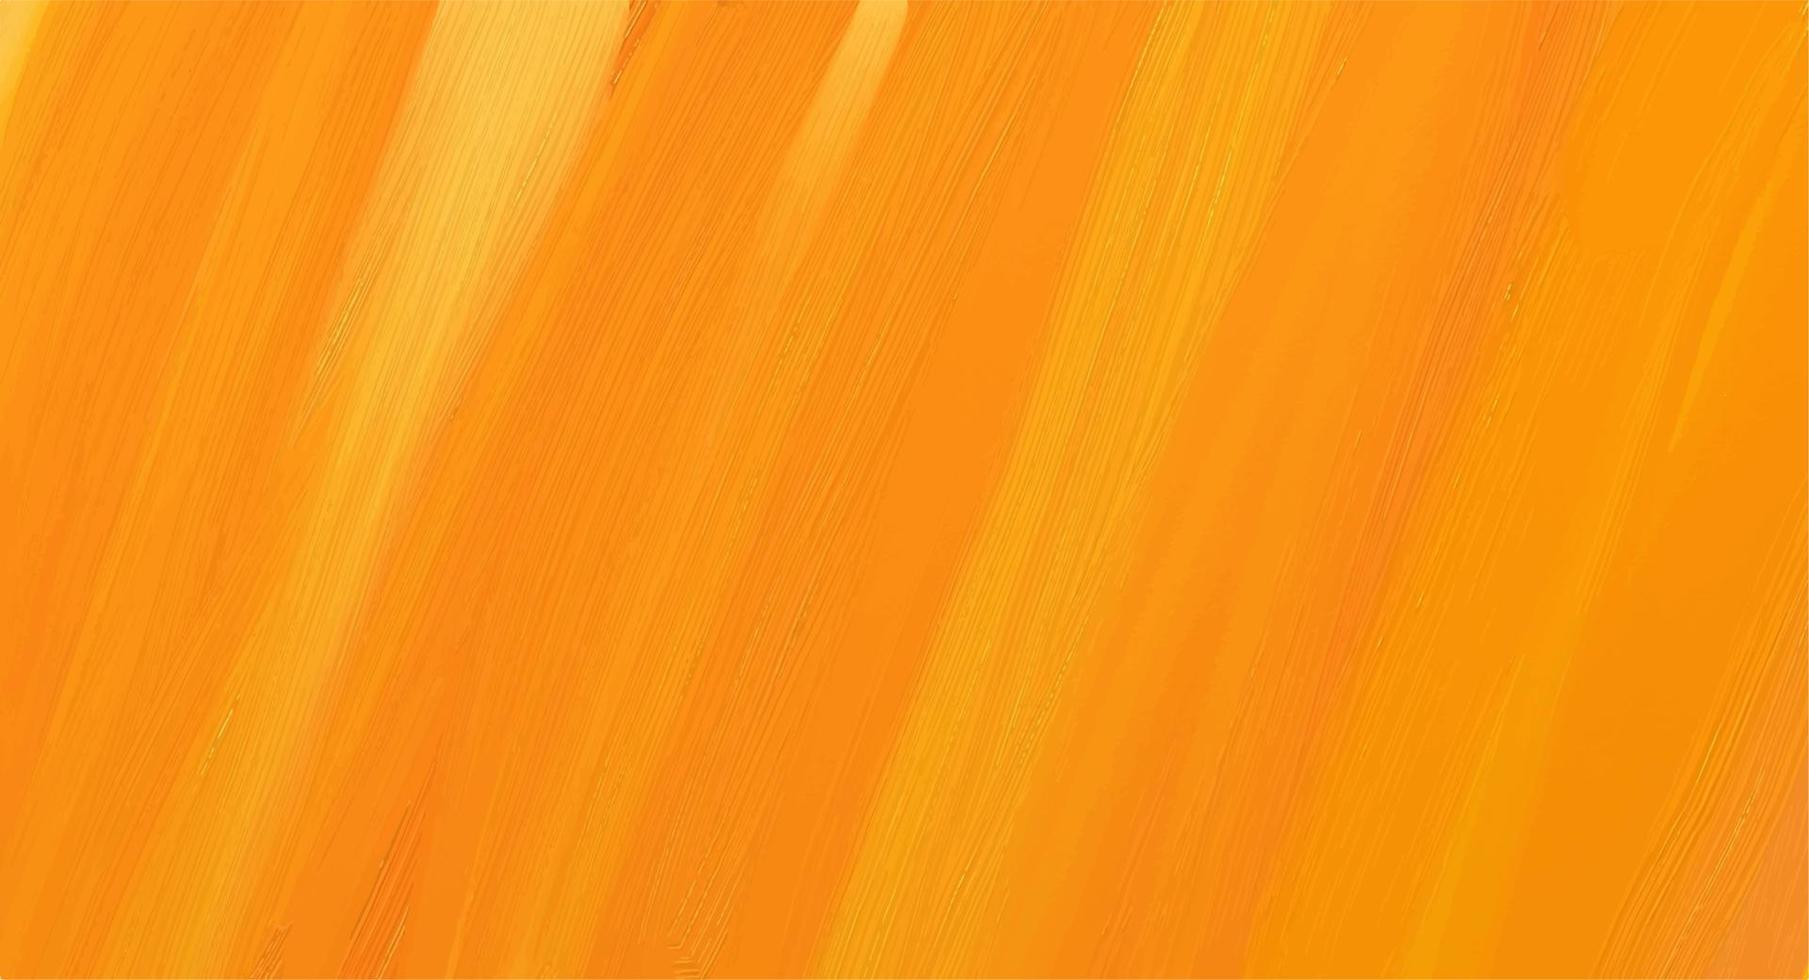 fundo para o site. capa da primeira página do site. imagem brilhante nas cores amarelas e laranja. ilustração vetorial abstrata. vetor